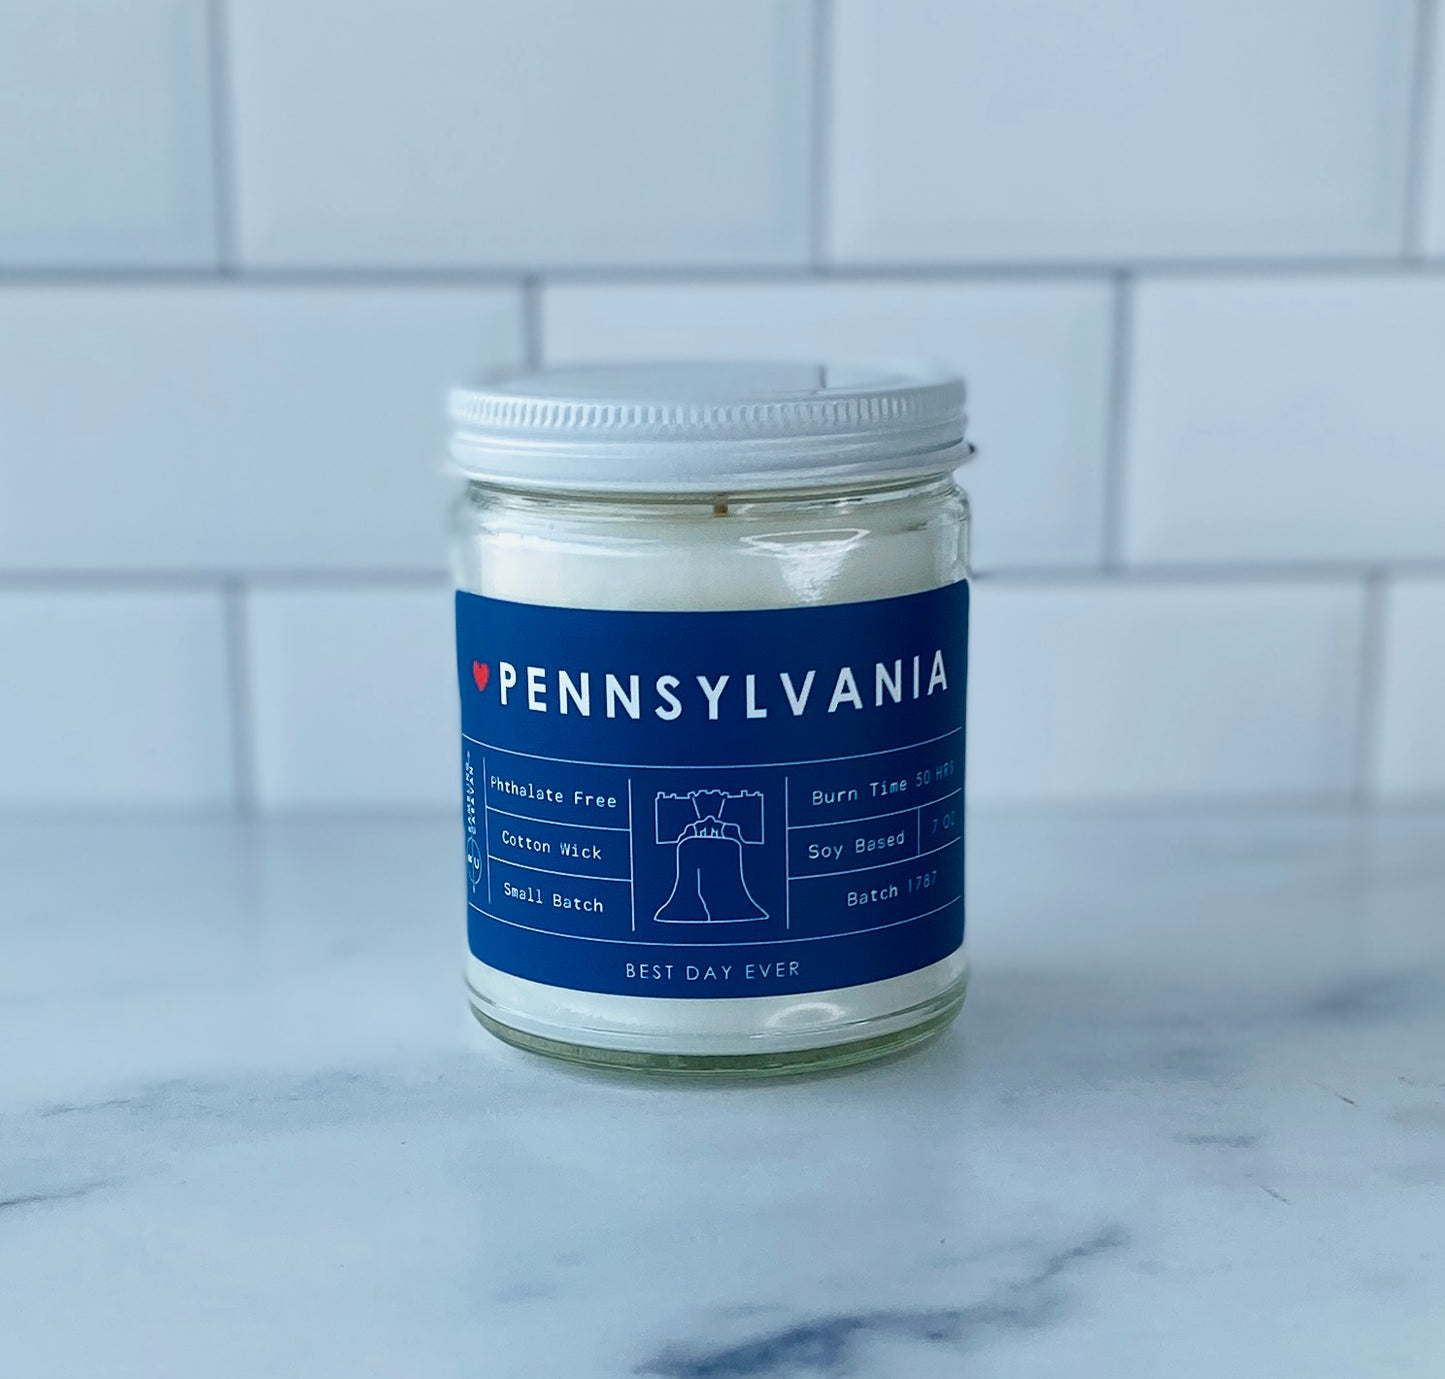 Pennsylvania Candle